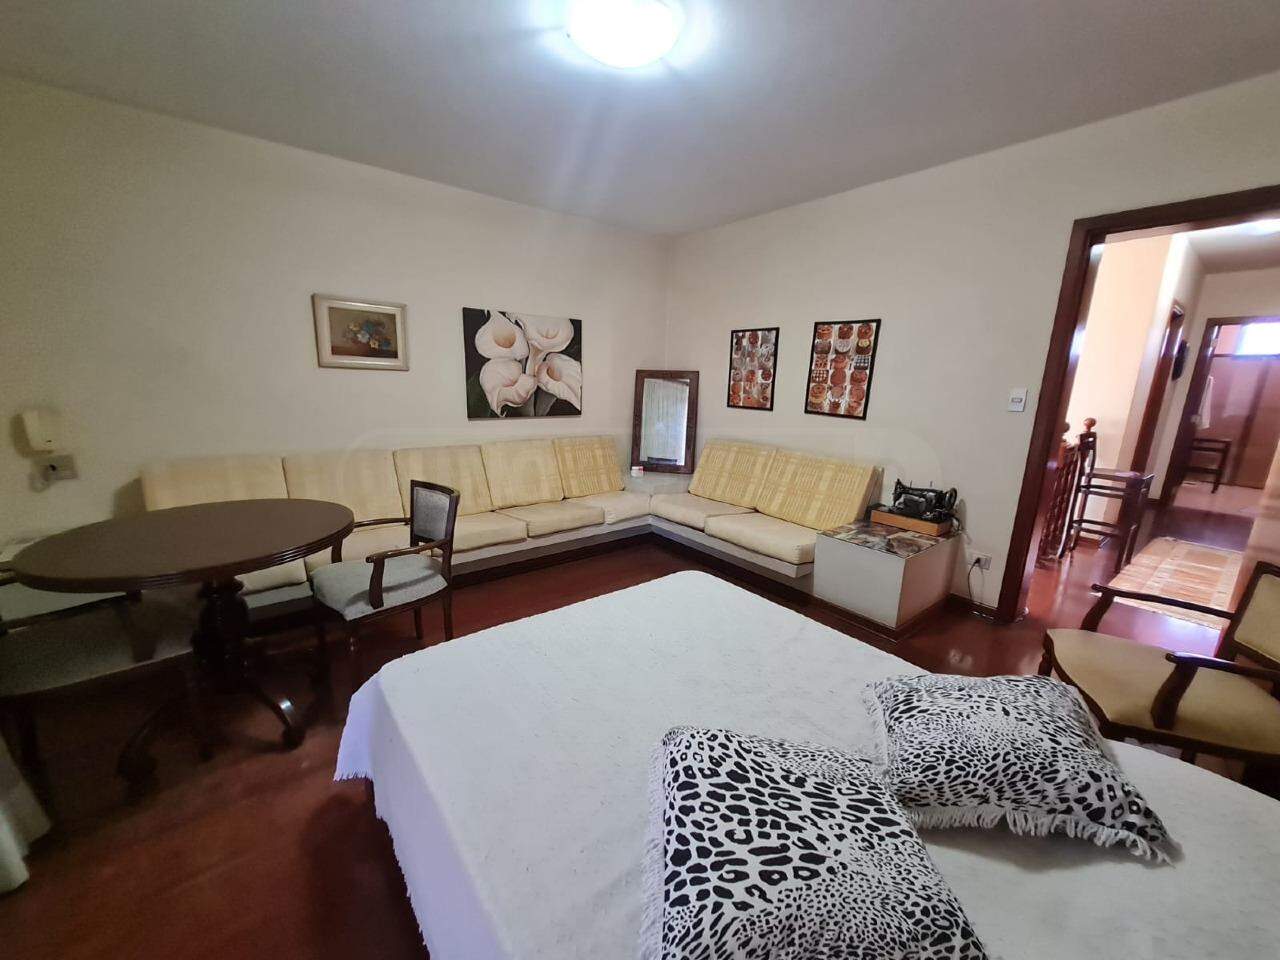 Casa à venda, 4 quartos, sendo 1 suíte, 4 vagas, no bairro Nova Piracicaba em Piracicaba - SP